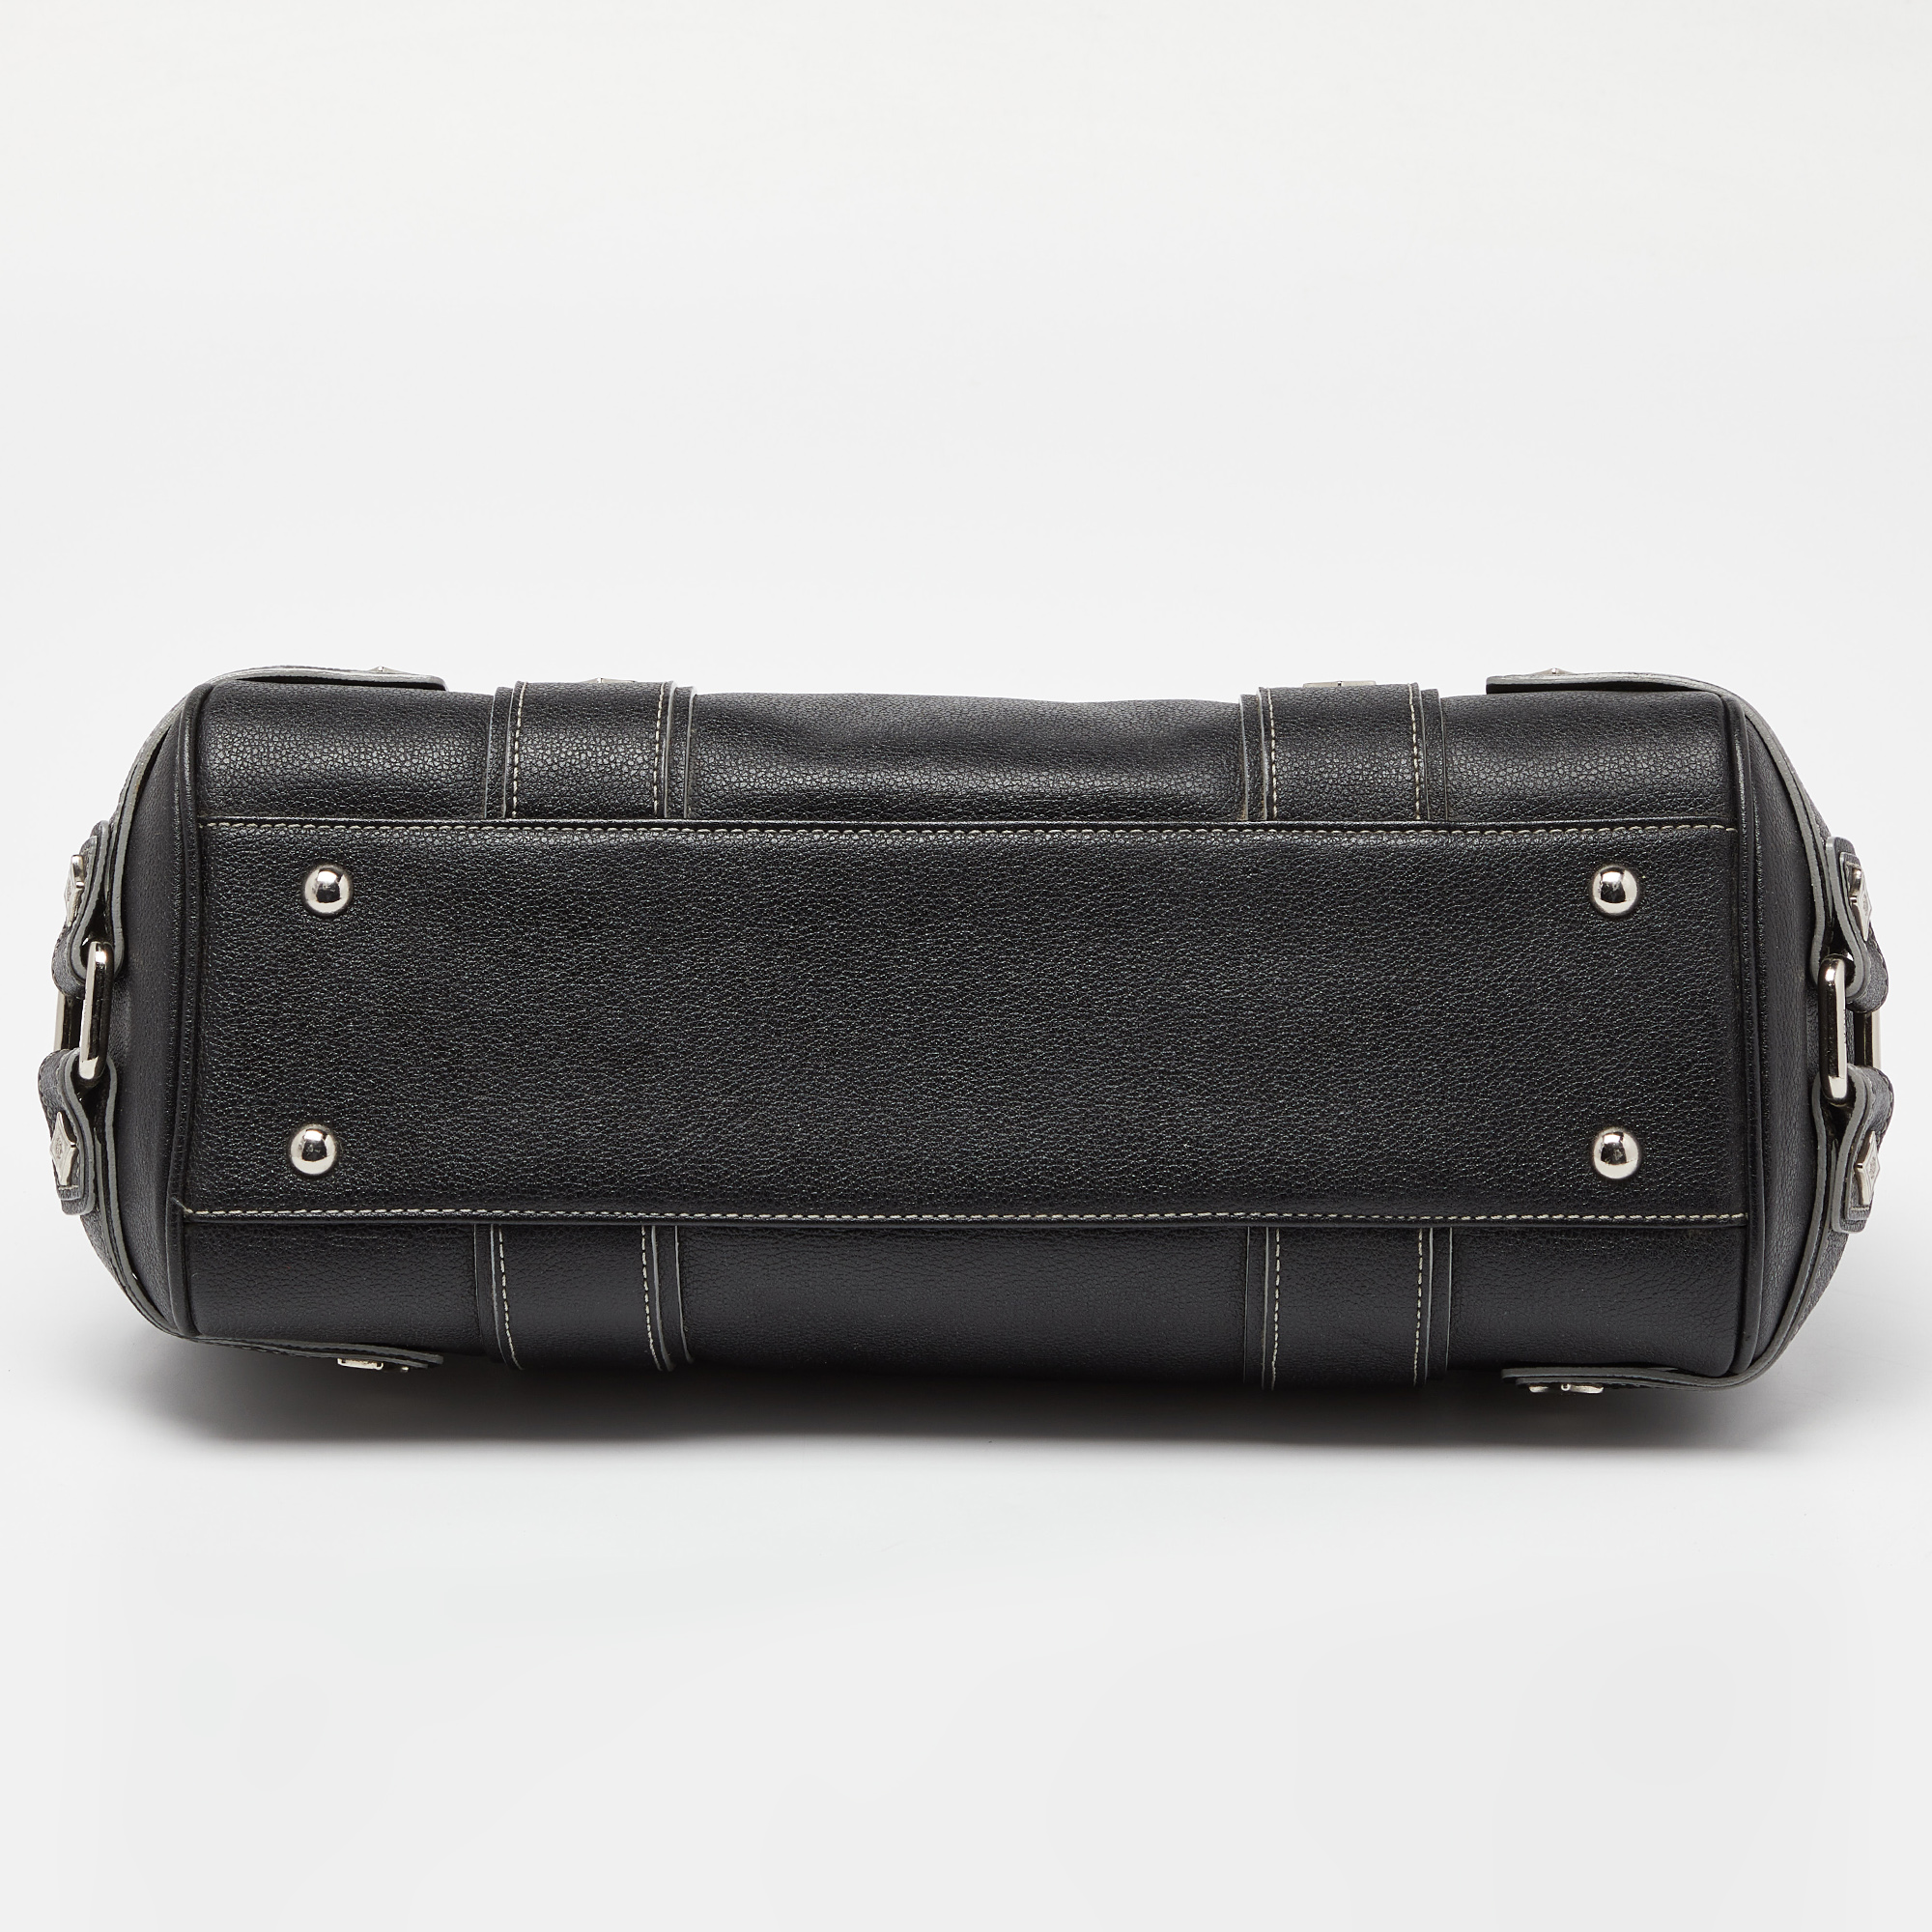 MCM Black Leather Studded Frame Bag